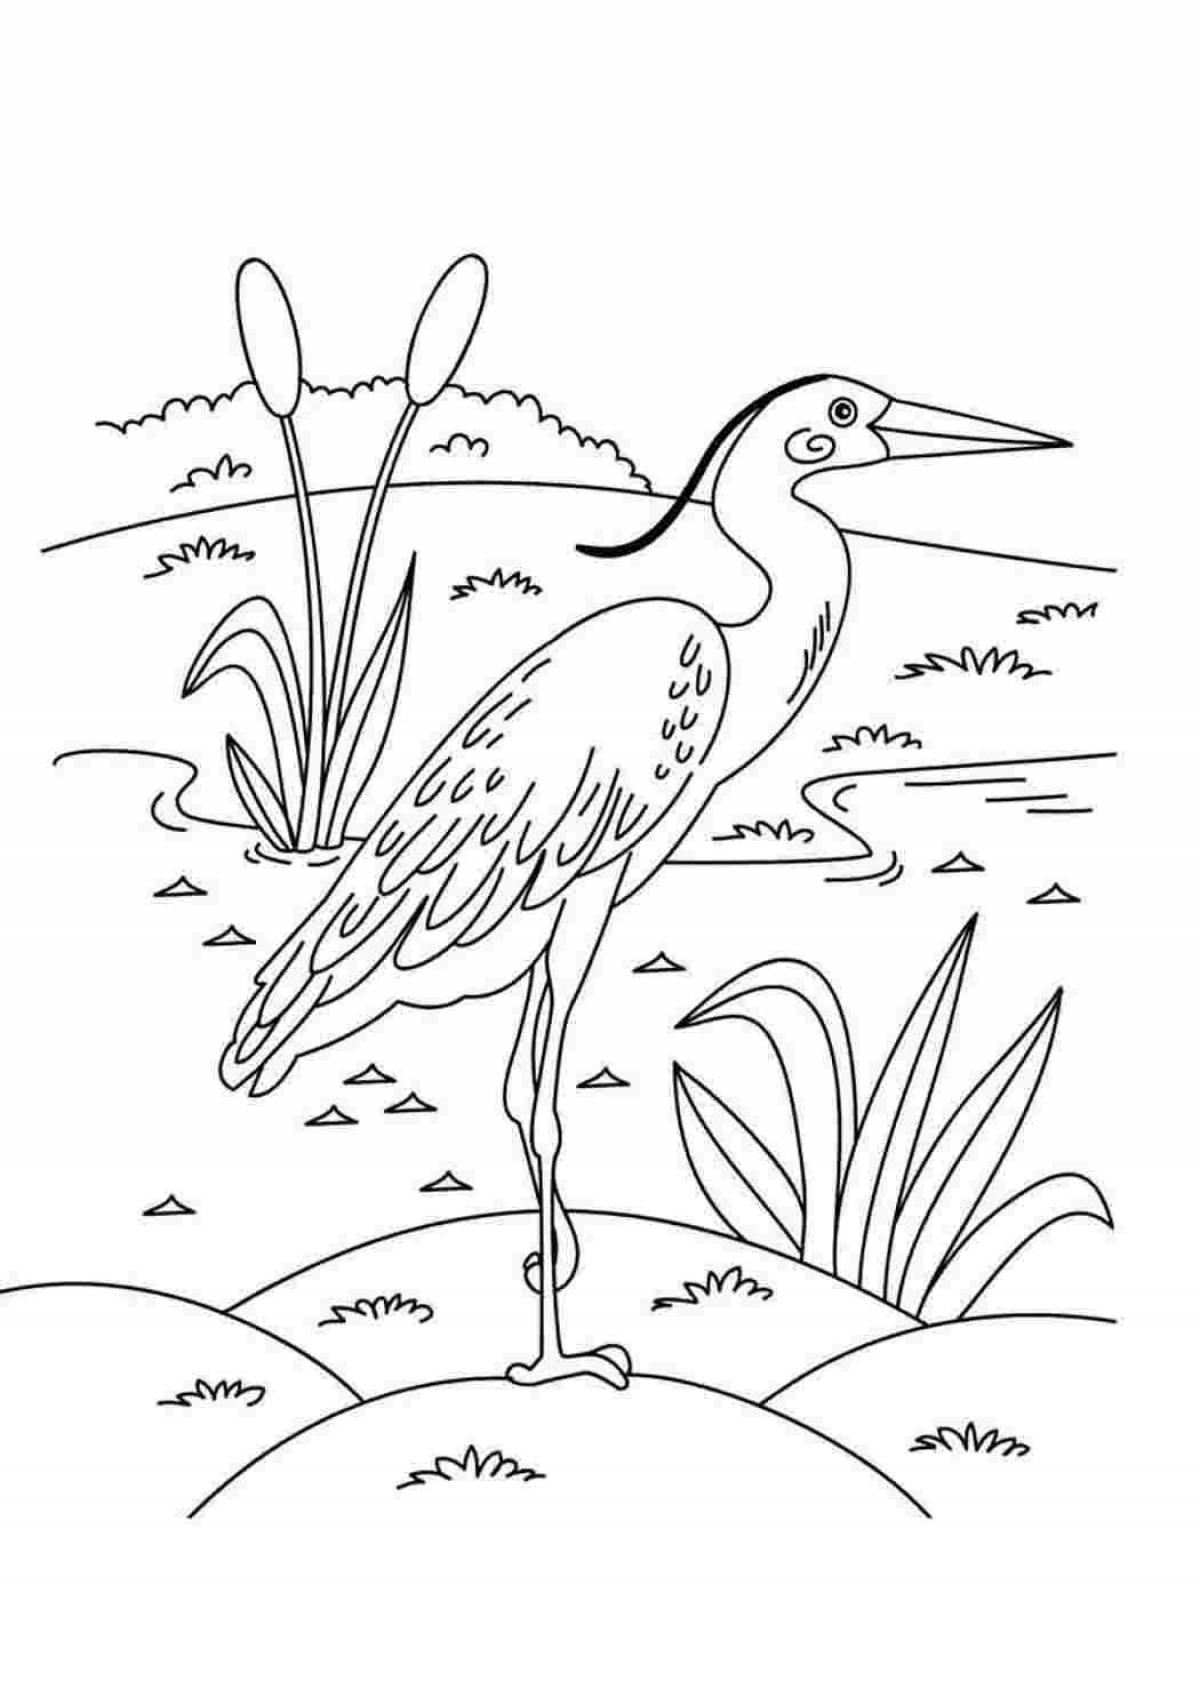 Incredible heron coloring book for kids